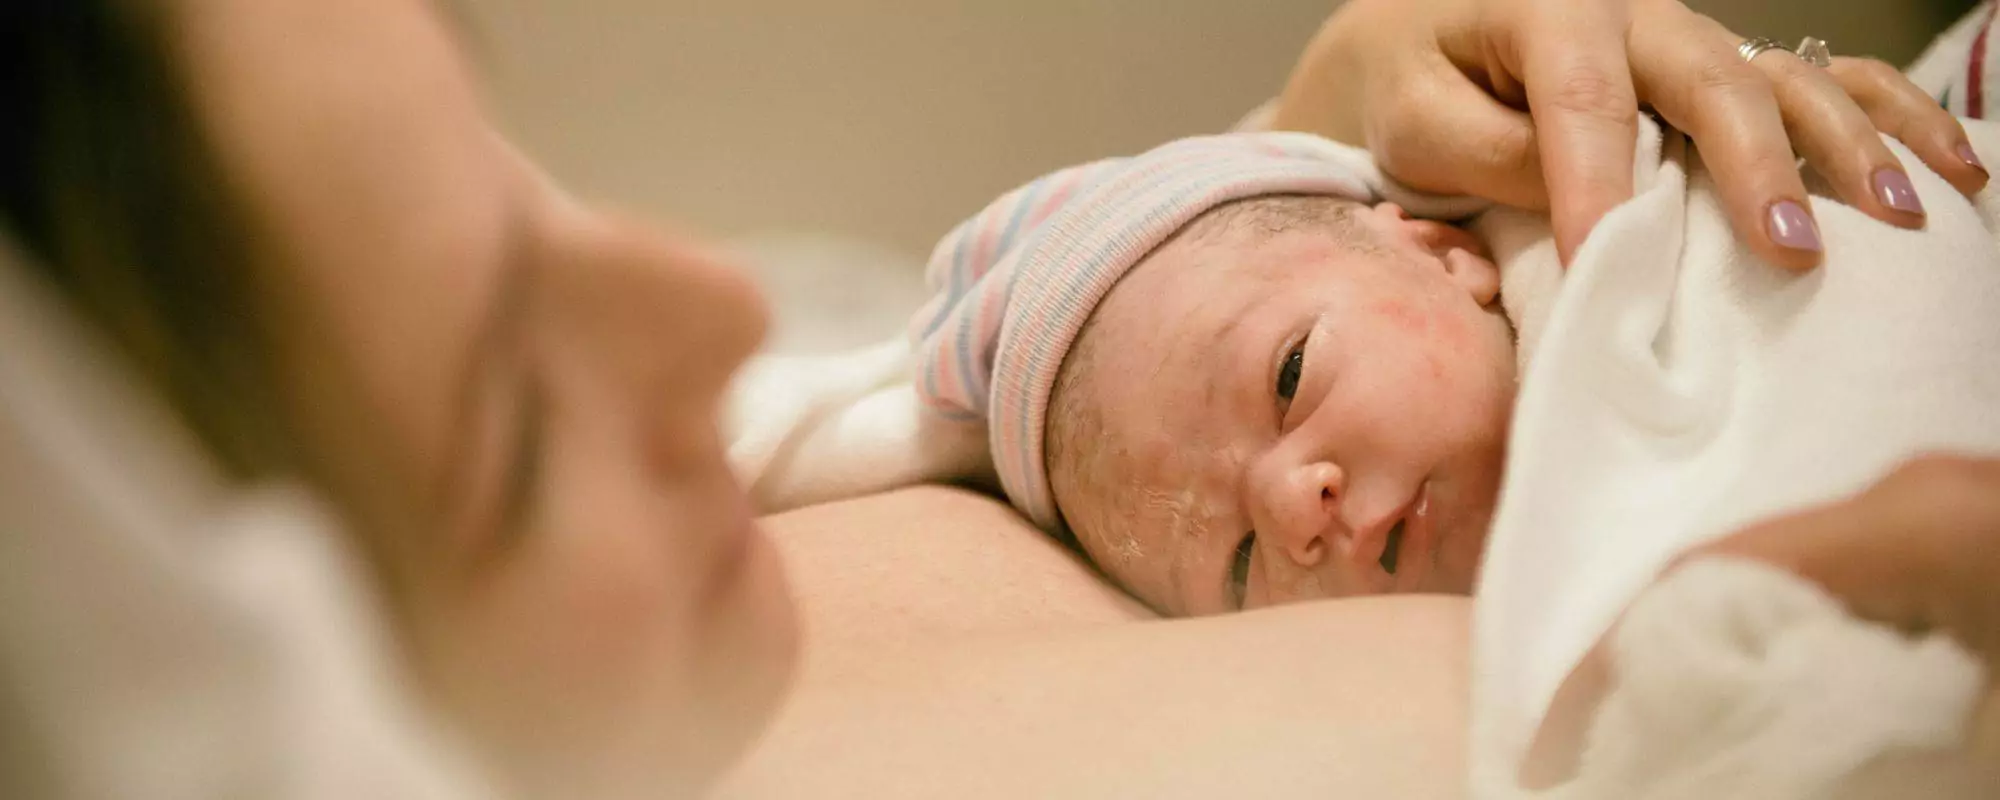 Признаки приближающихся родов | Впервые мама